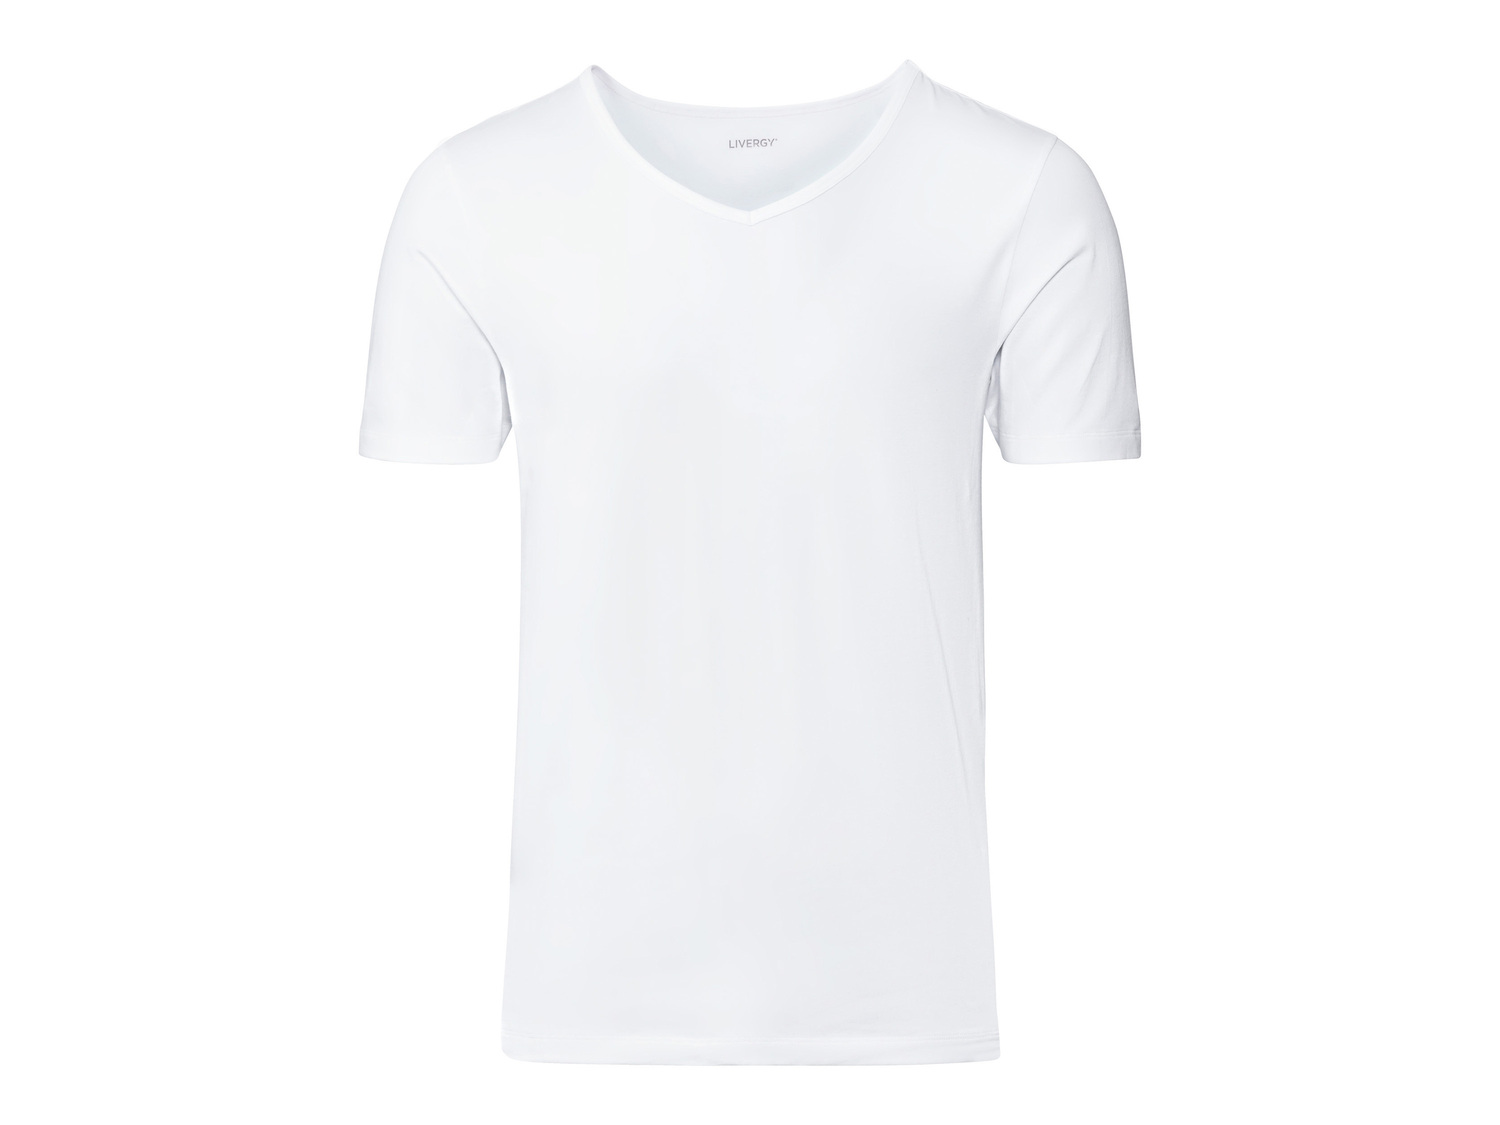 T-shirt intima da uomo Livergy, prezzo 4.99 &#8364; 
Misure: M-XL
Taglie disponibili

Caratteristiche

- ...